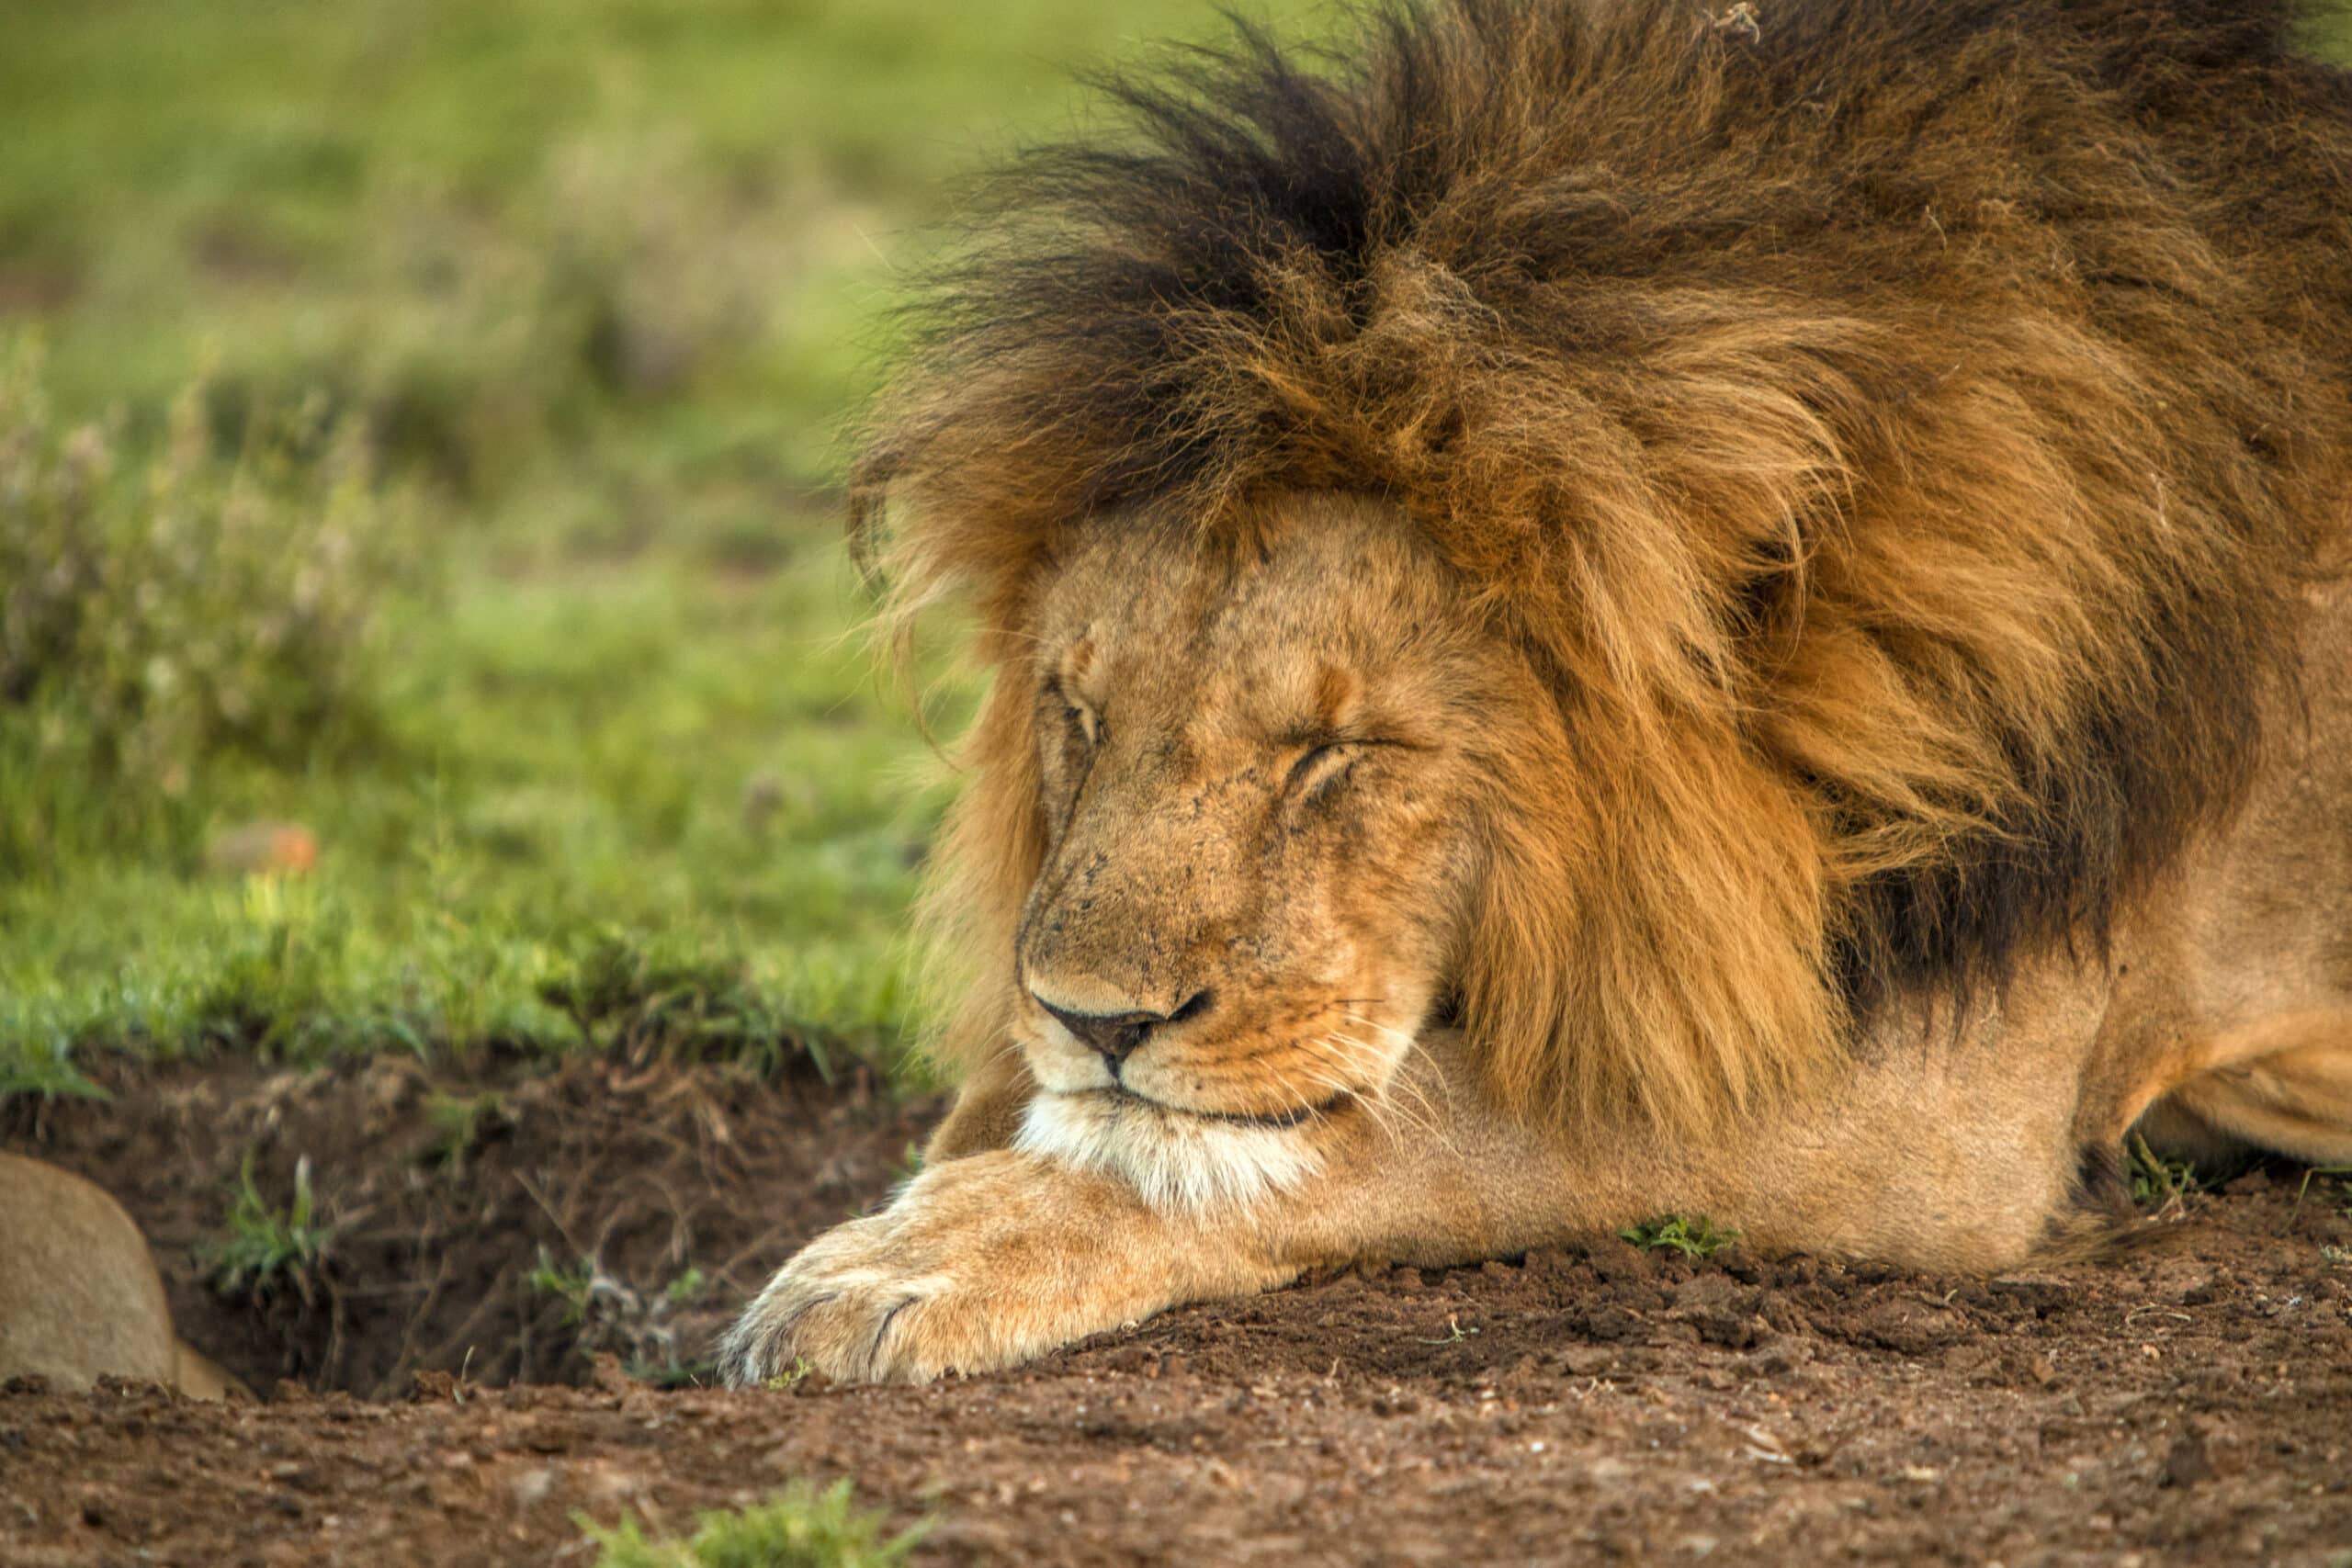 Ein männlicher Löwe mit üppiger Mähne legt seinen Kopf mit geschlossenen Augen auf seine Pfote, in einer ruhigen natürlichen Umgebung mit grünem Gras und weicher Erde. © Fotografie Tomas Rodriguez